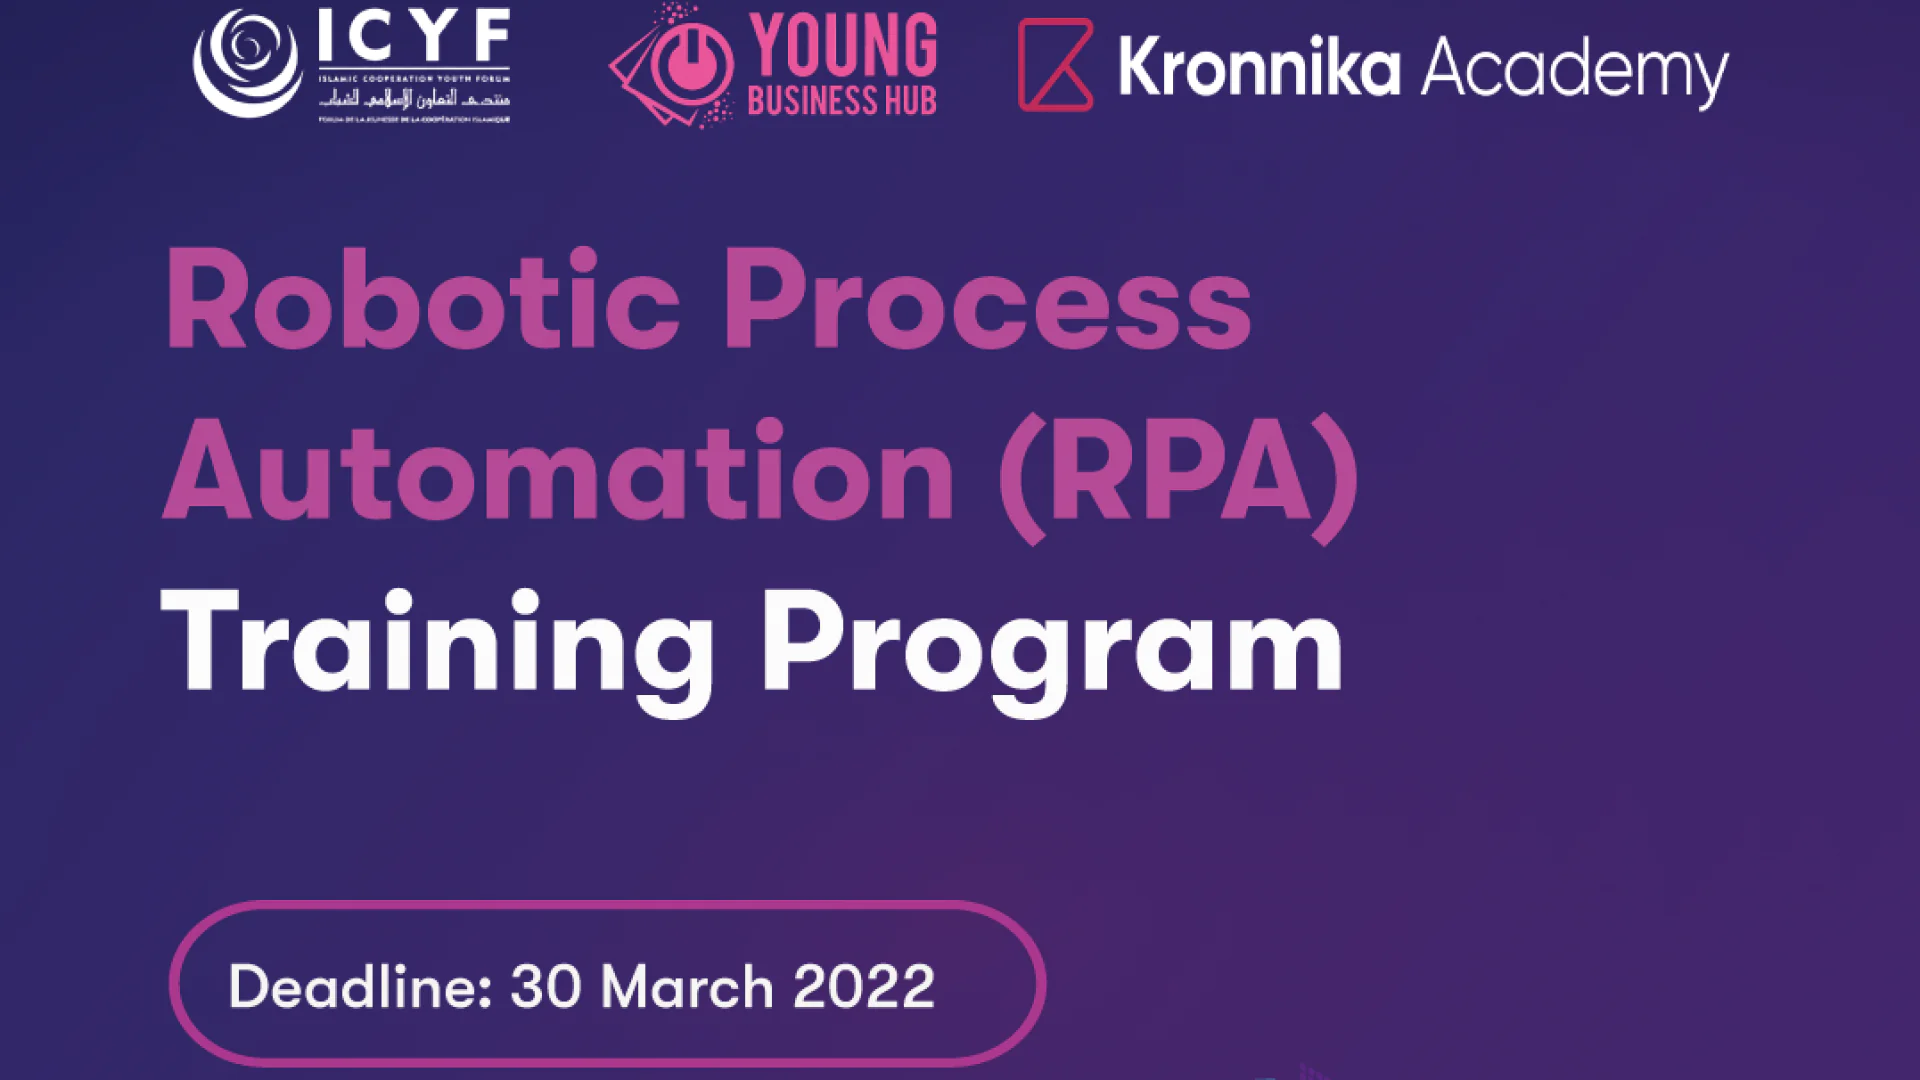 IT sohasiga qiziquvchi yoshlar uchun ICYF tomonidan Kronnika Robotic Process Automation Training Program dasturi